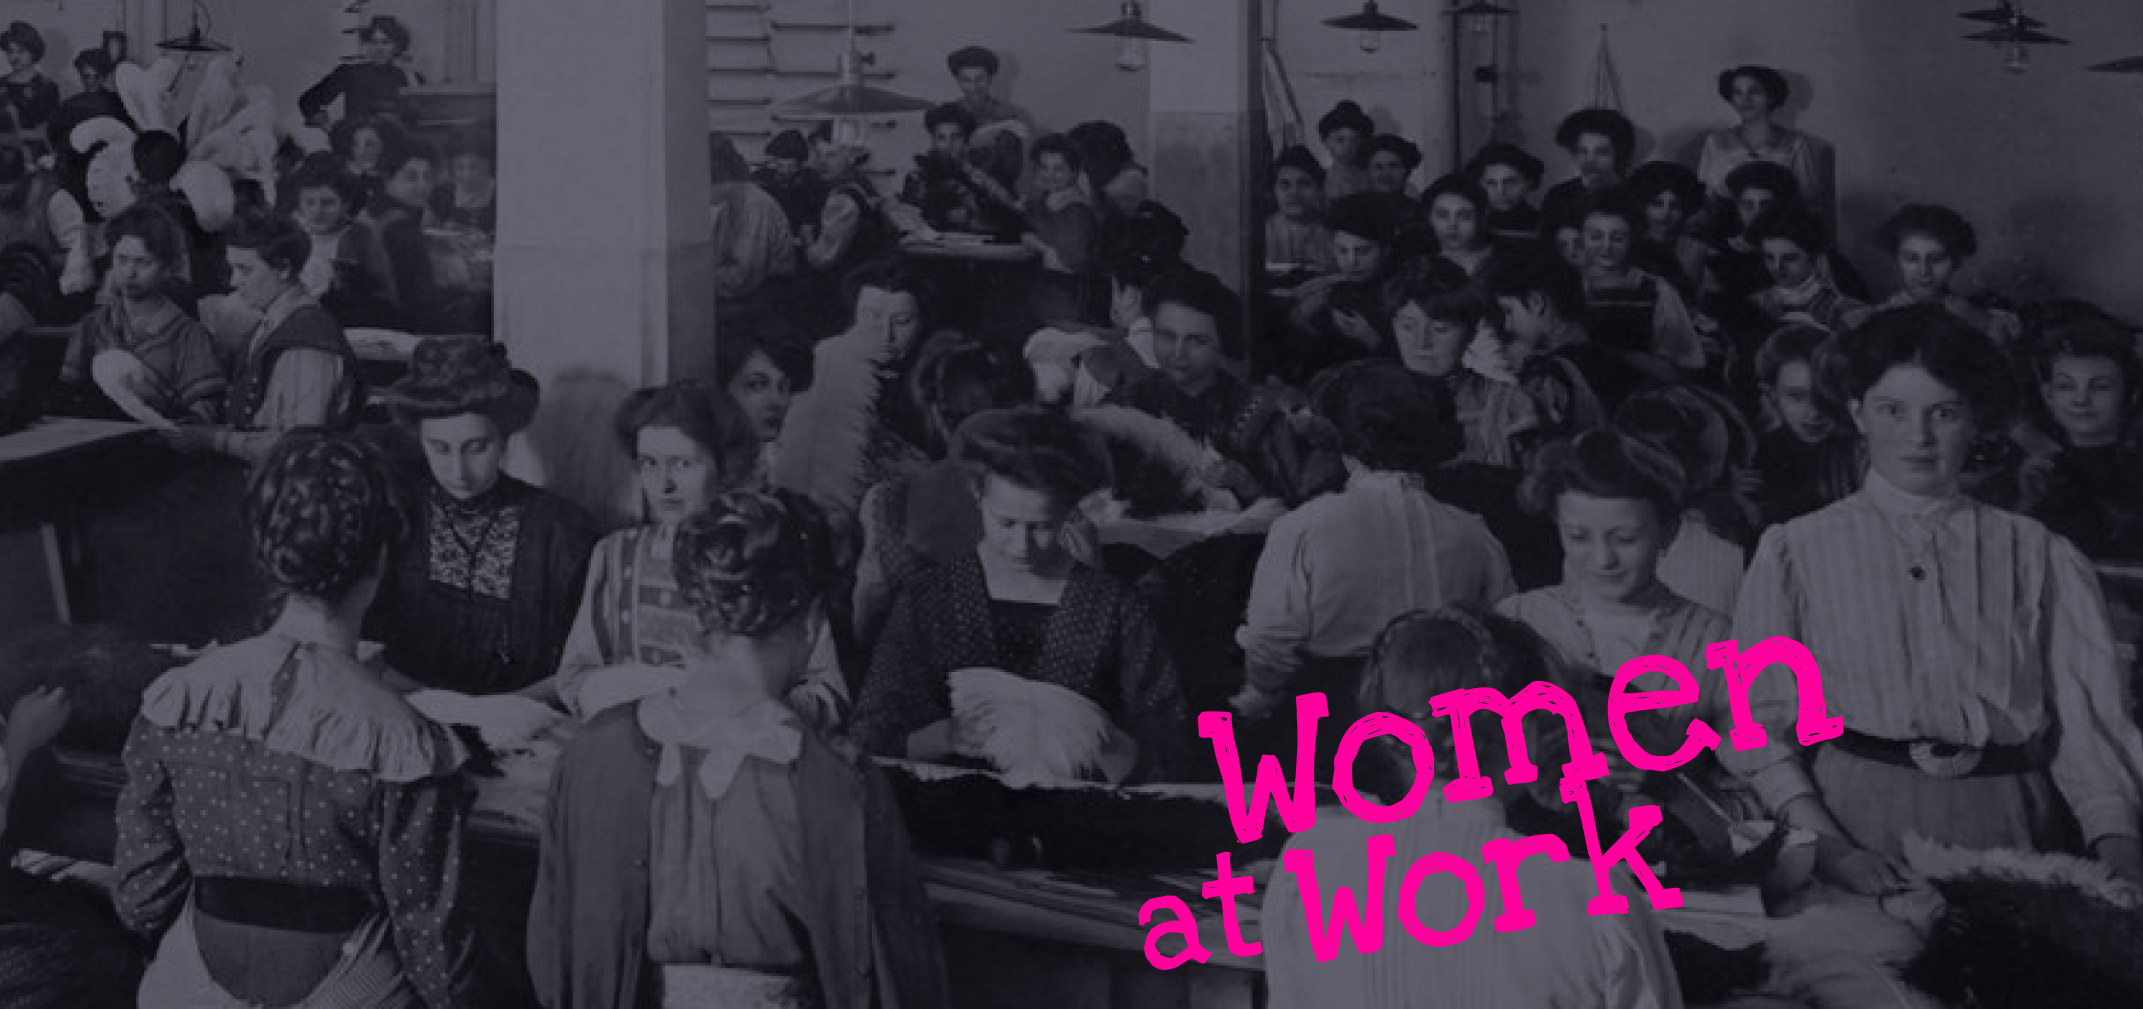 Verknüpfung: 150 Jahre Frauenpavillon der Wiener Weltausstellung: Ein Ausschnitt aus einem Foto einer Halle in einer Schmuckfeder-Fabrik, Foto um 1900